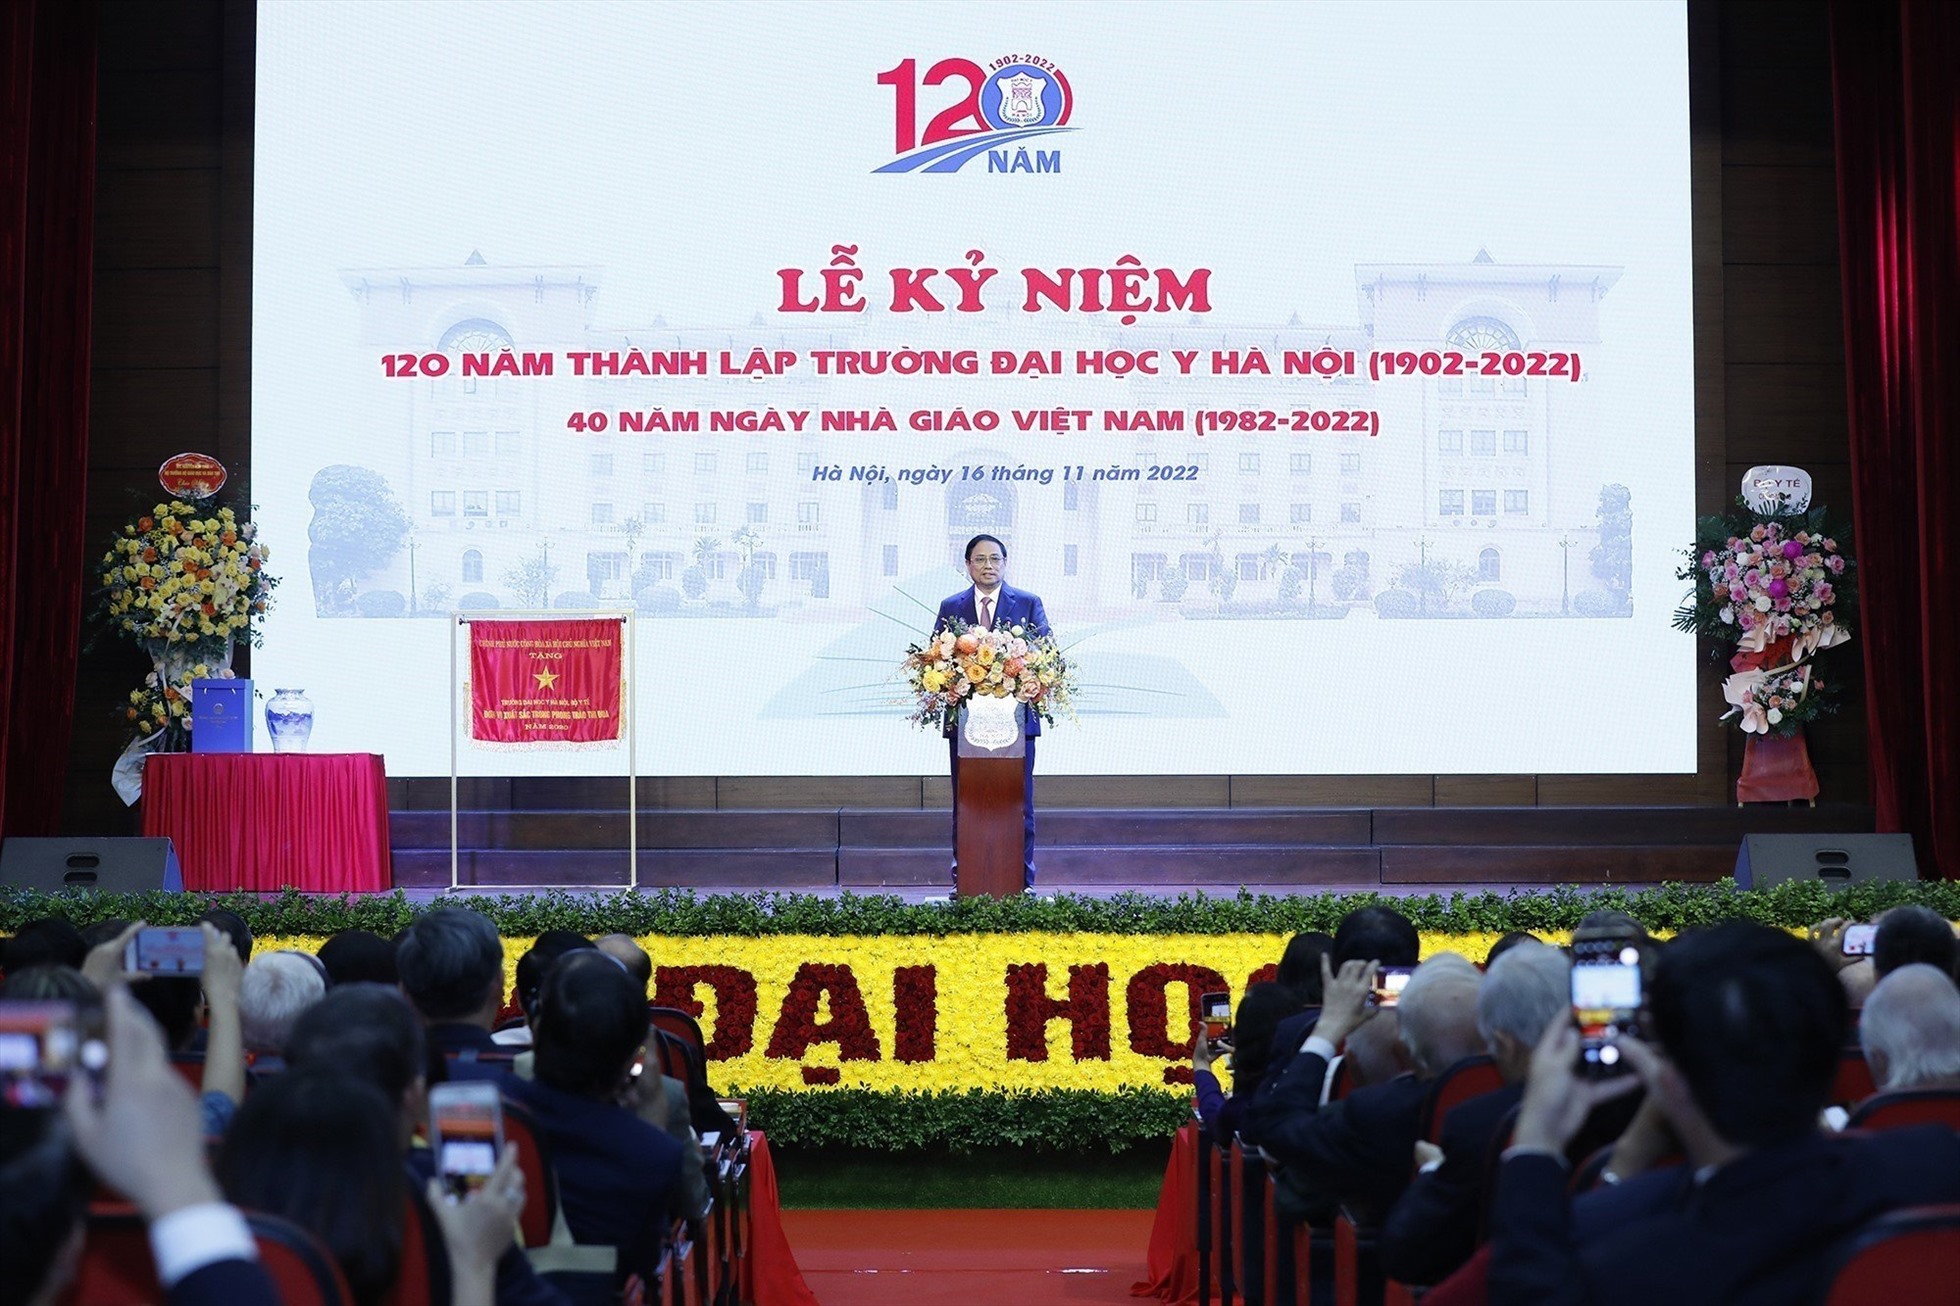 Thủ tướng Phạm Minh Chính dự kỷ niệm 120 năm thành lập Trường Đại học Y Hà Nội.